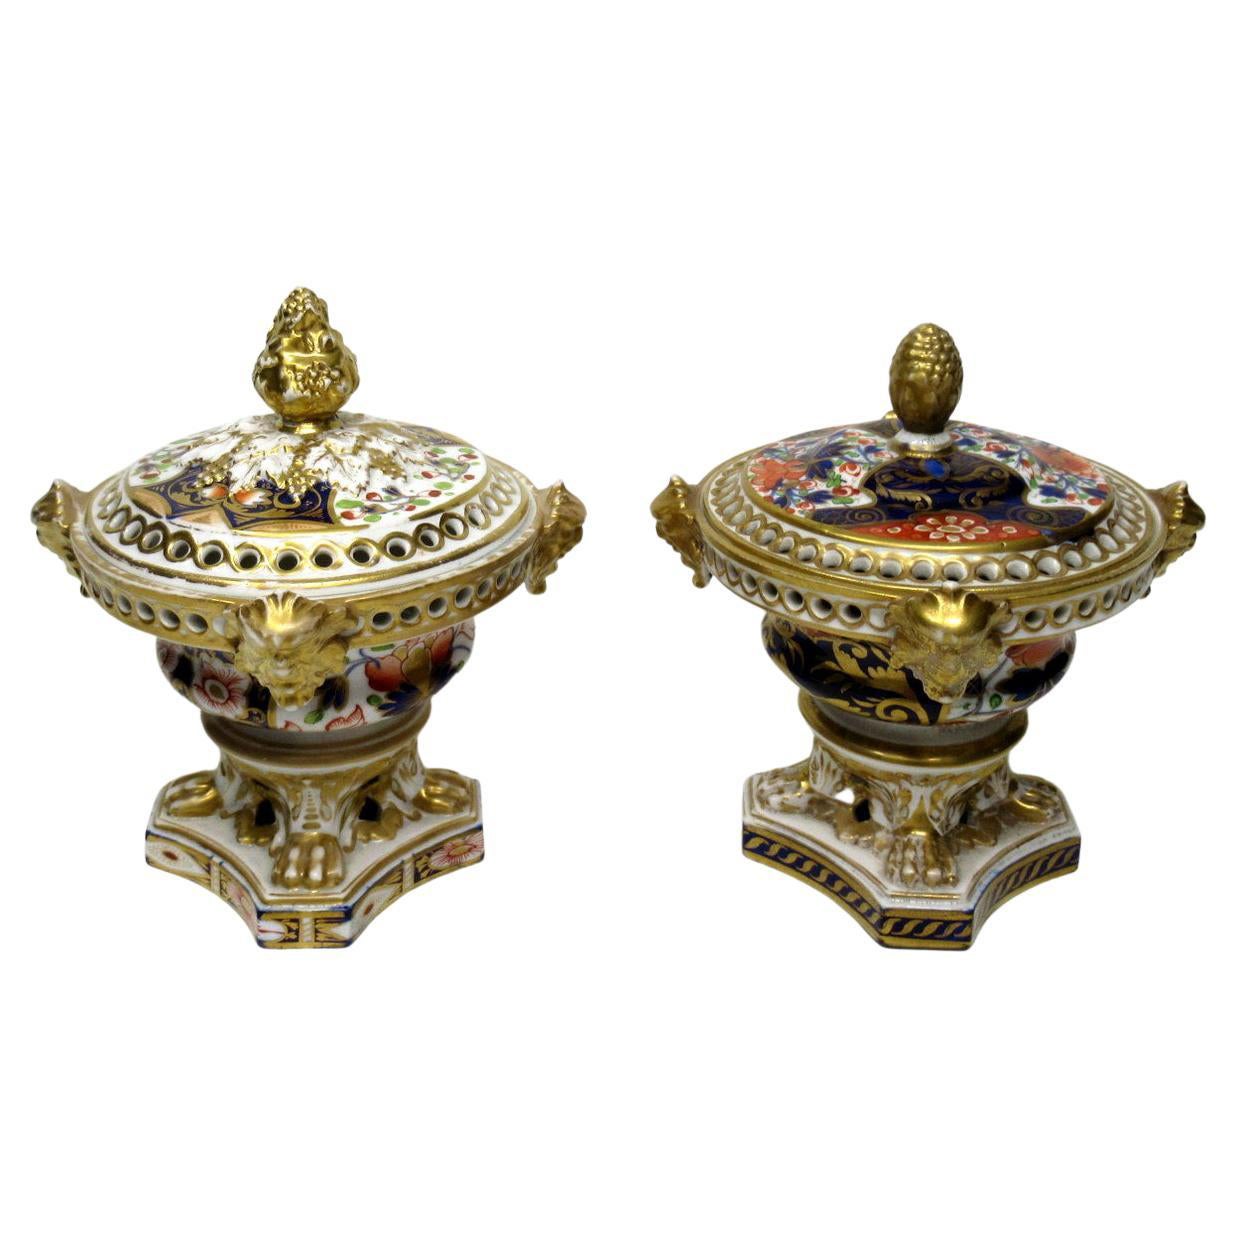 Antique Regency English Crown Derby Pair Urns Vases Pot Pourri Centerpieces